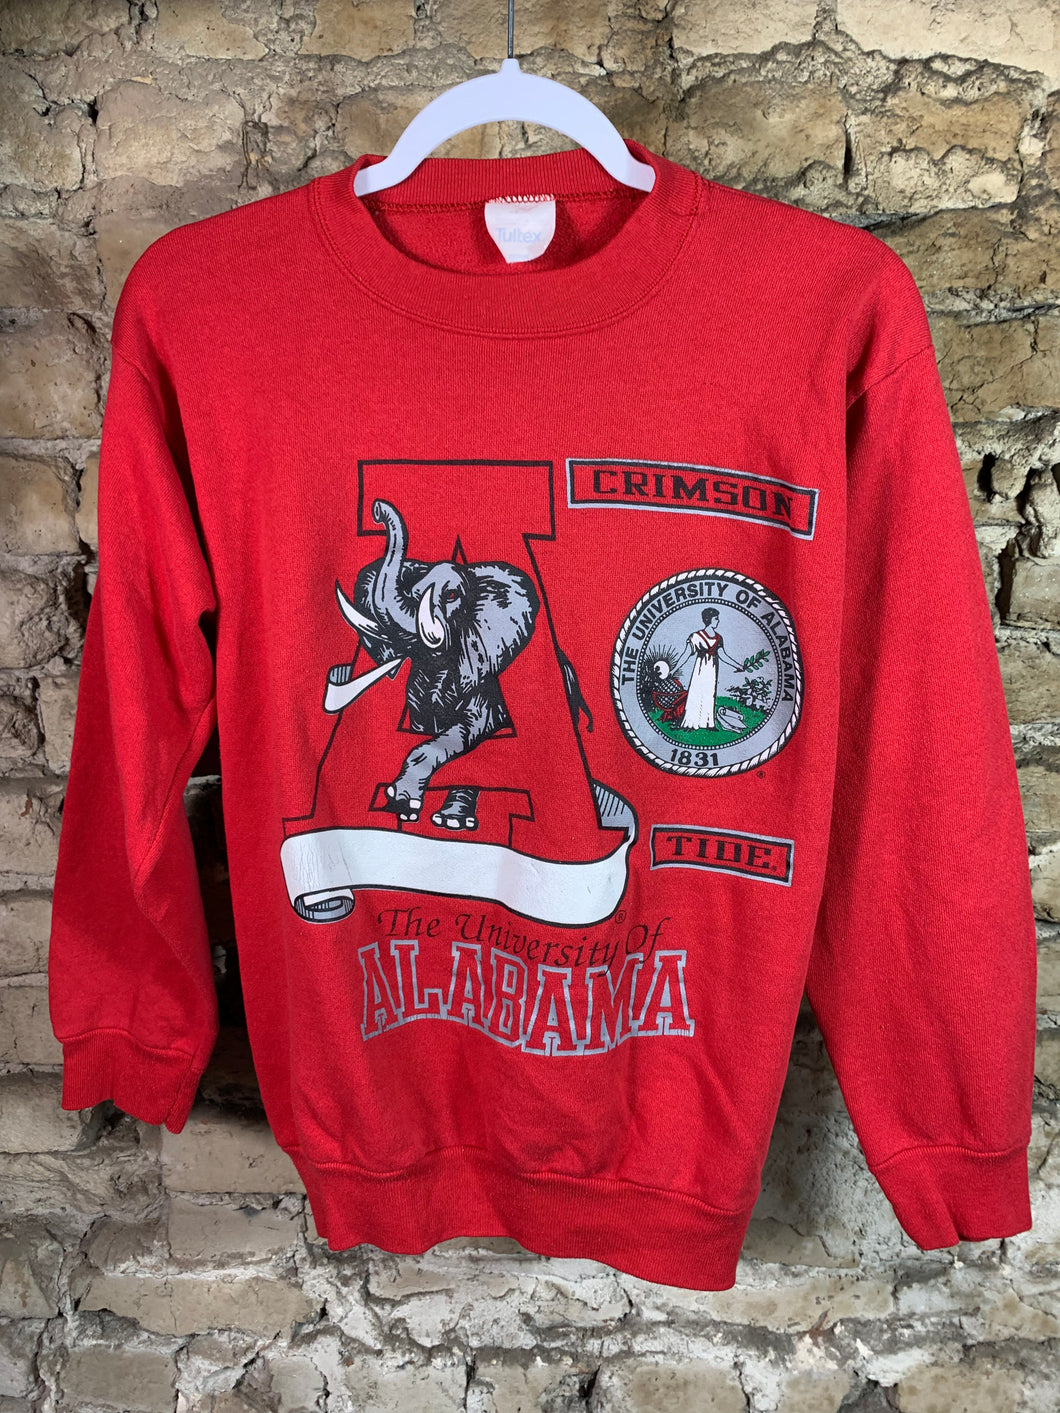 Vintage University of Alabama Sweatshirt Medium